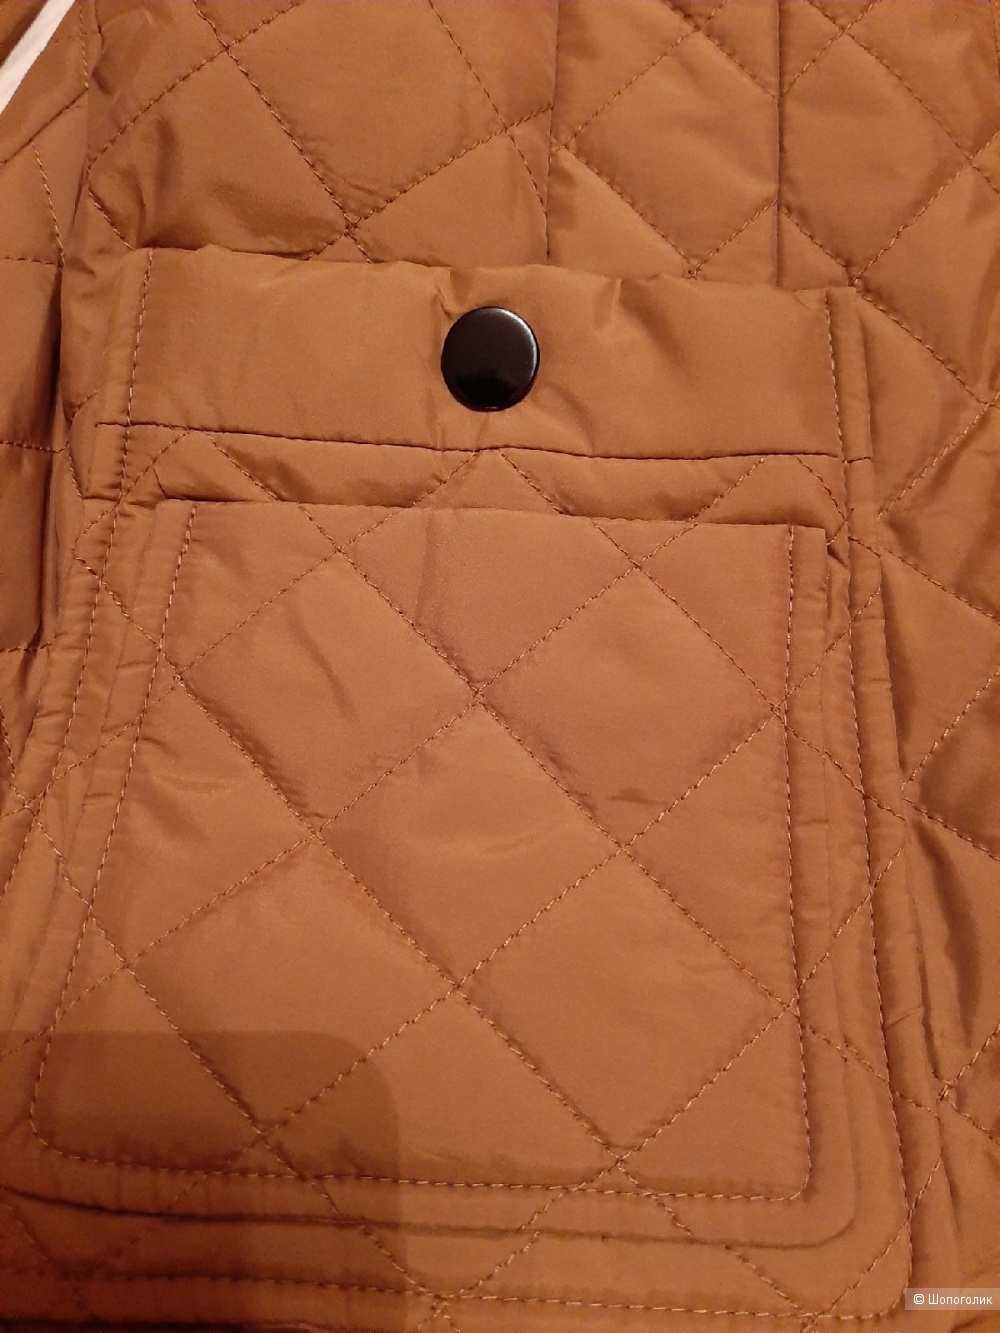 Ппльто/куртка Madeleine размер 46